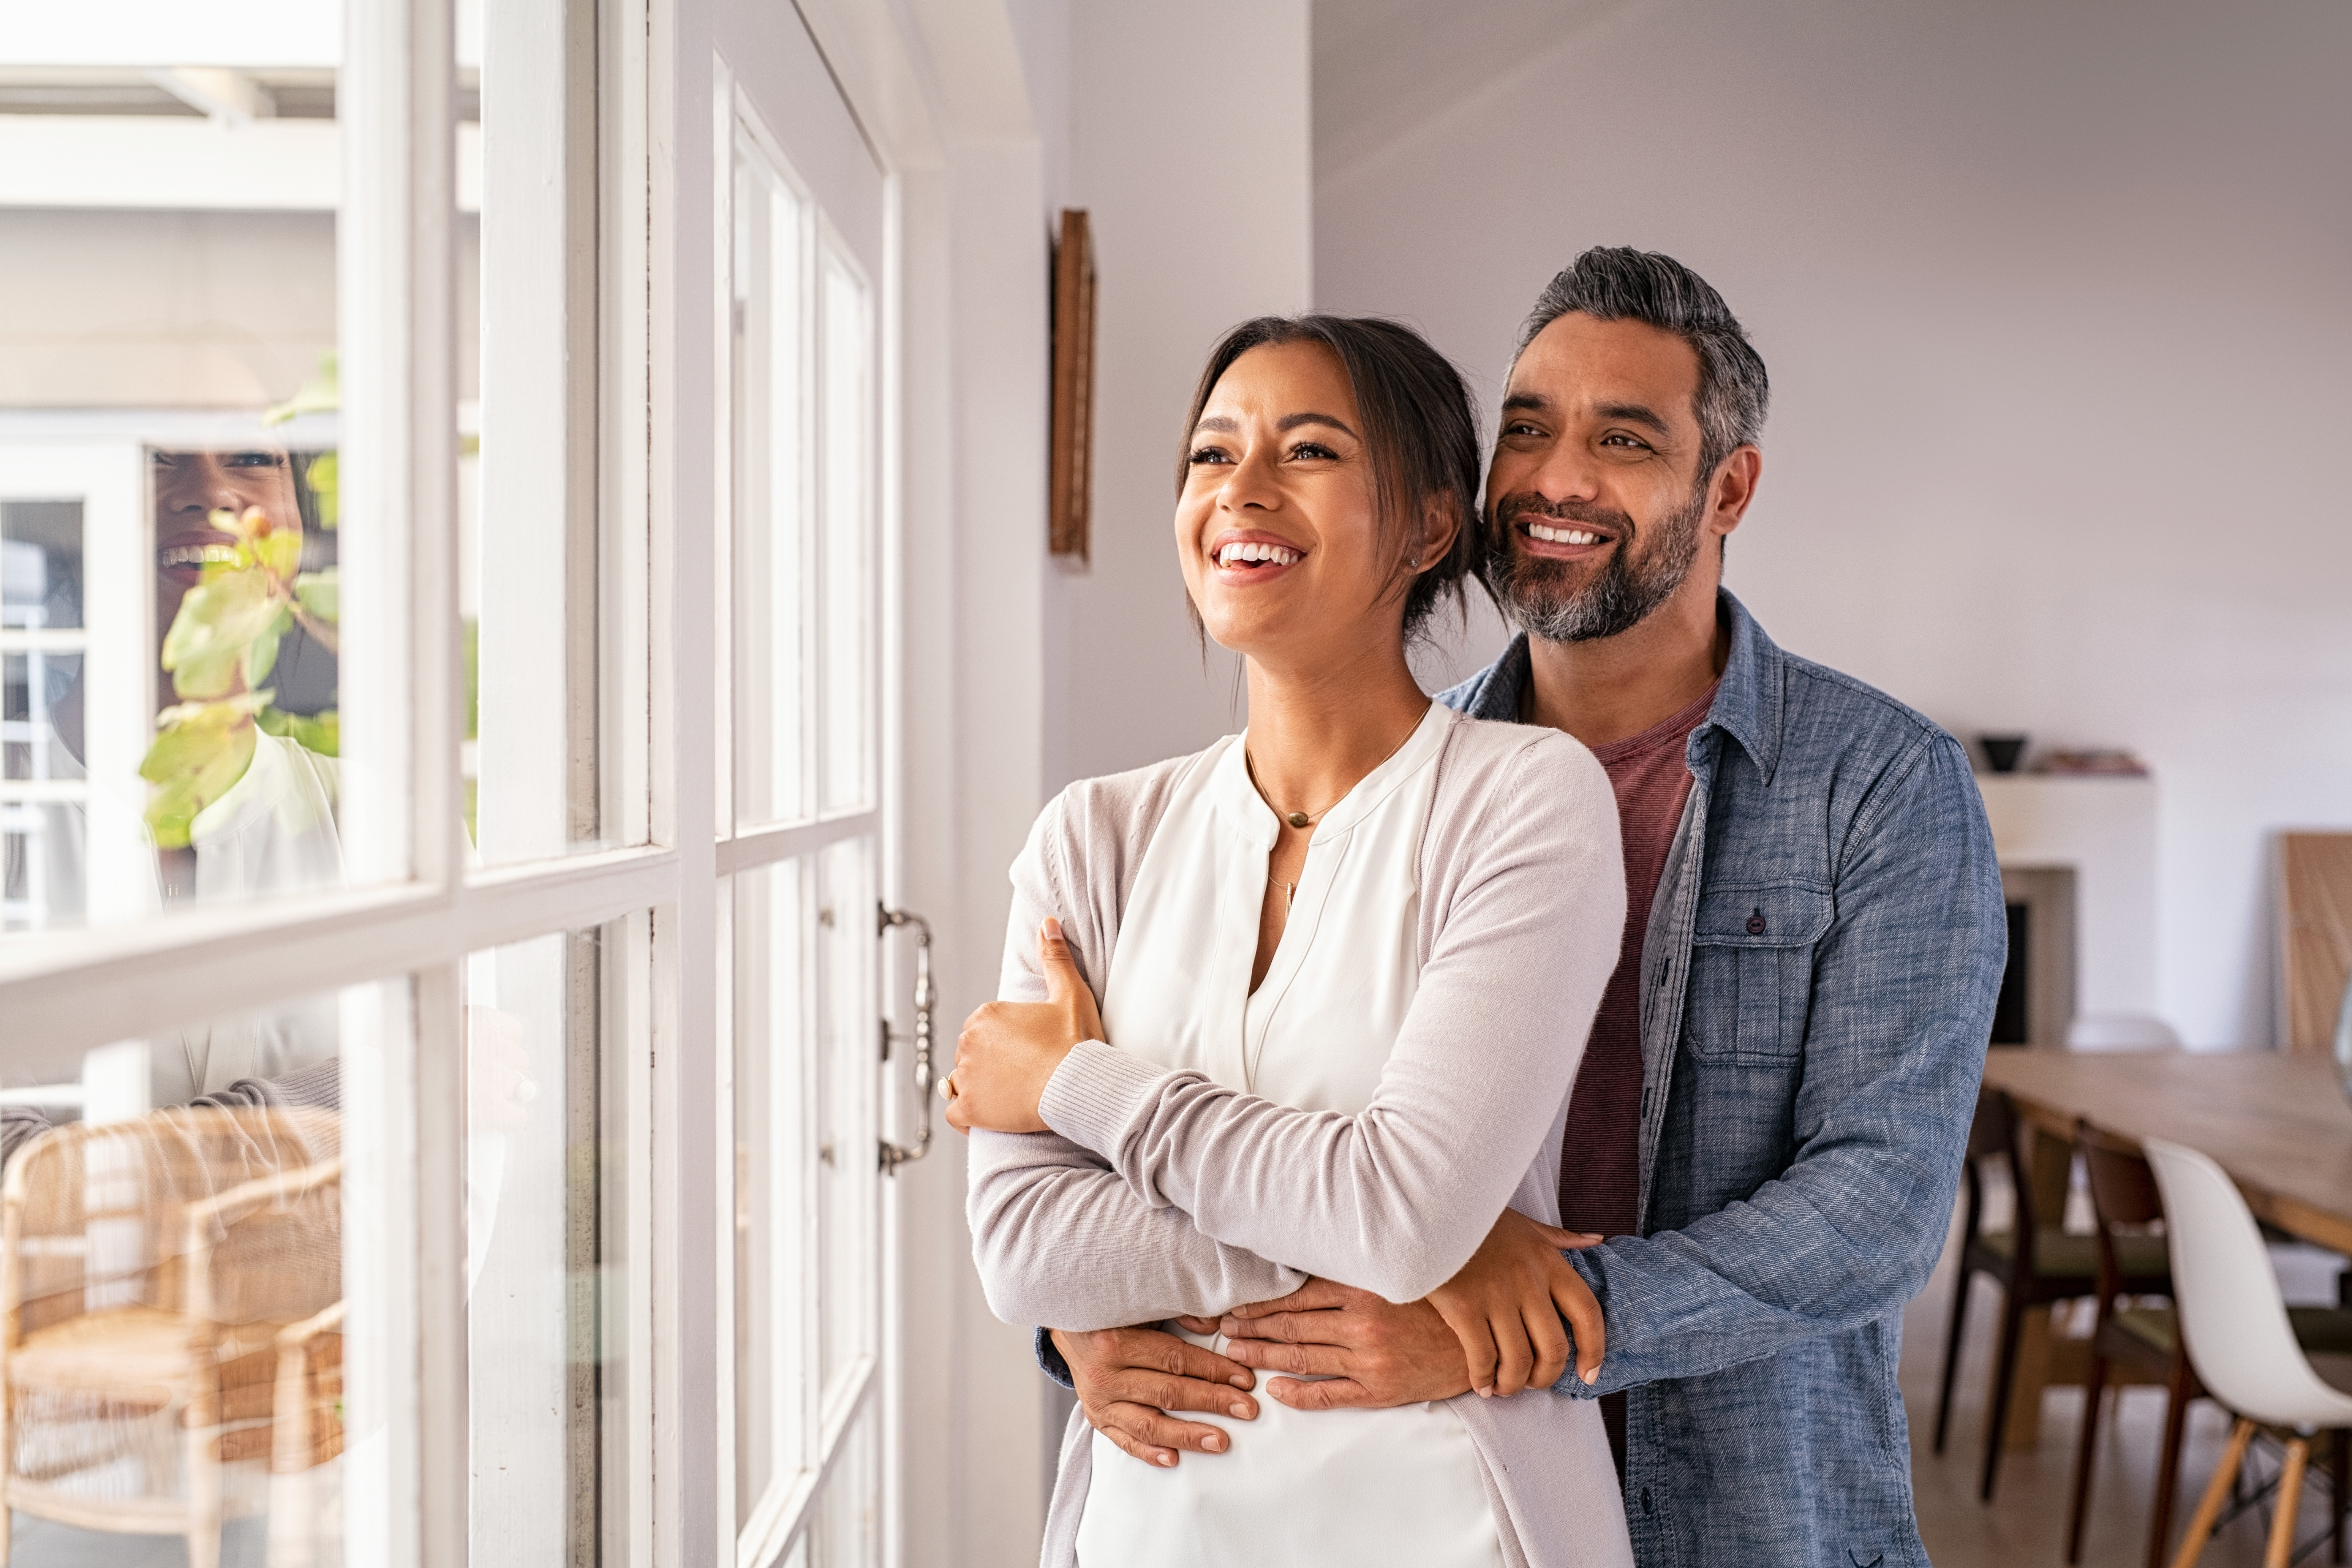 Una pareja feliz sonriendo y mirando por una ventana | Fuente: Shutterstock